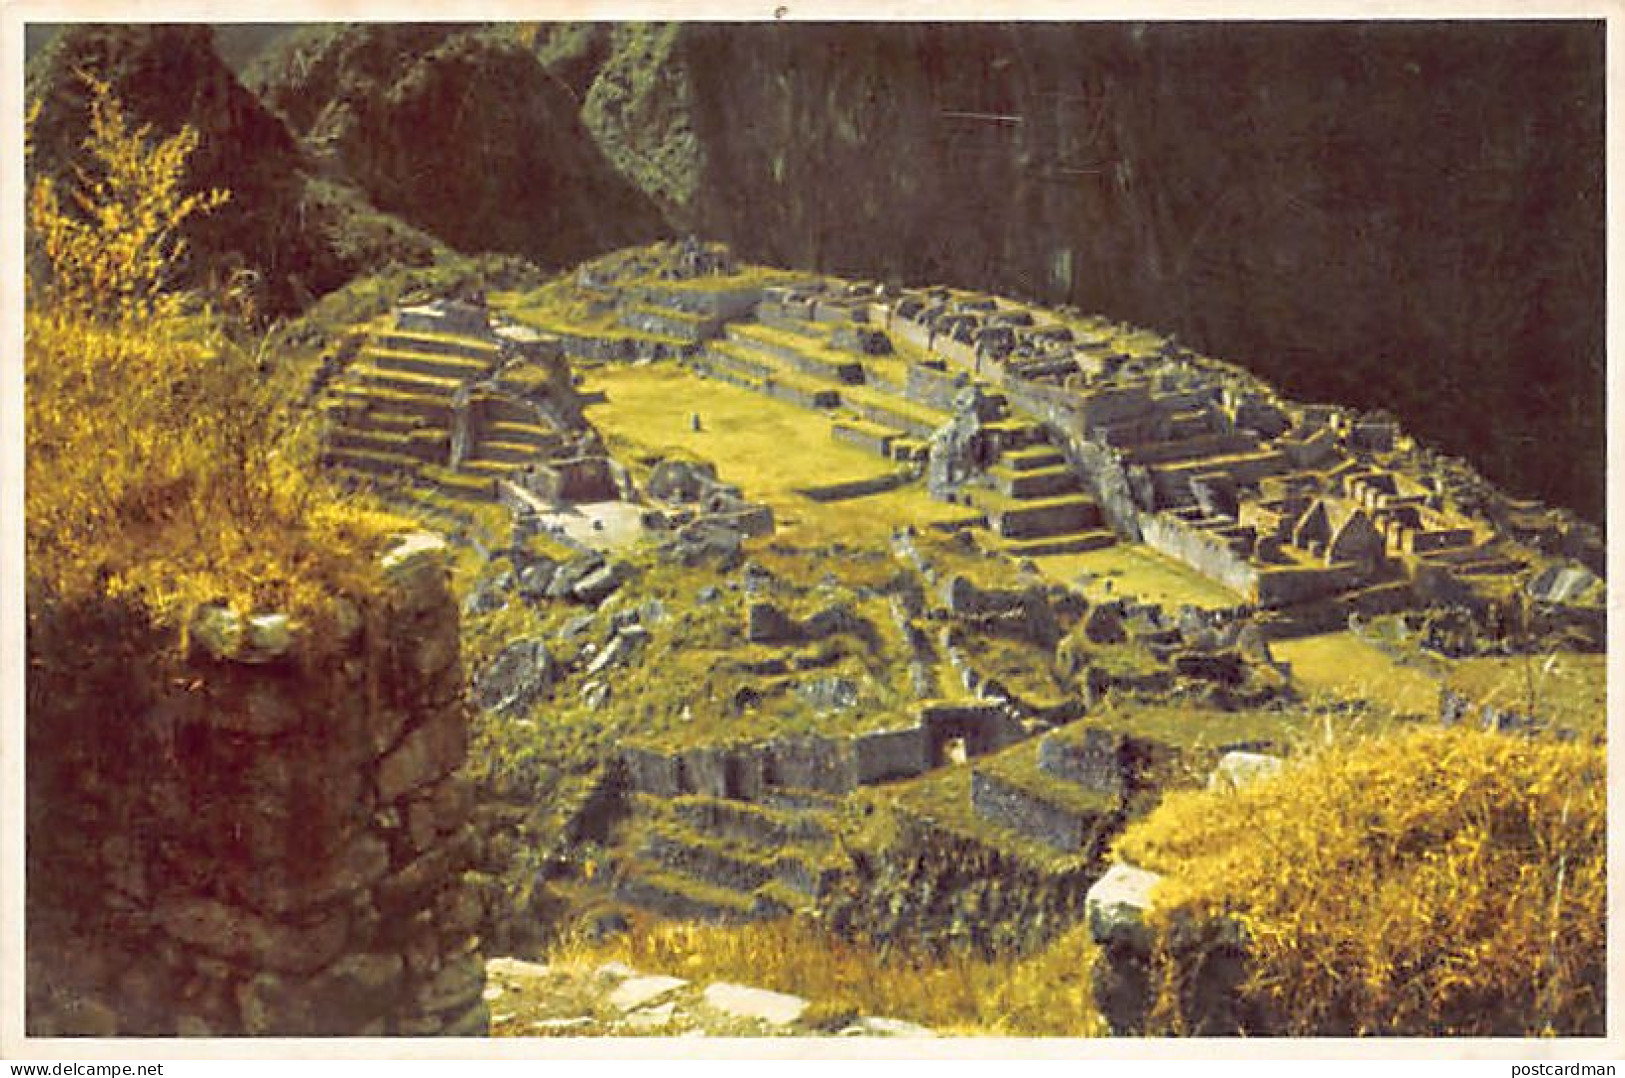 Peru - CUZCO - Vista Central De Las Ruinas Incaicas De Machu Picchu - Ed. Udo Schack 125 - Peru